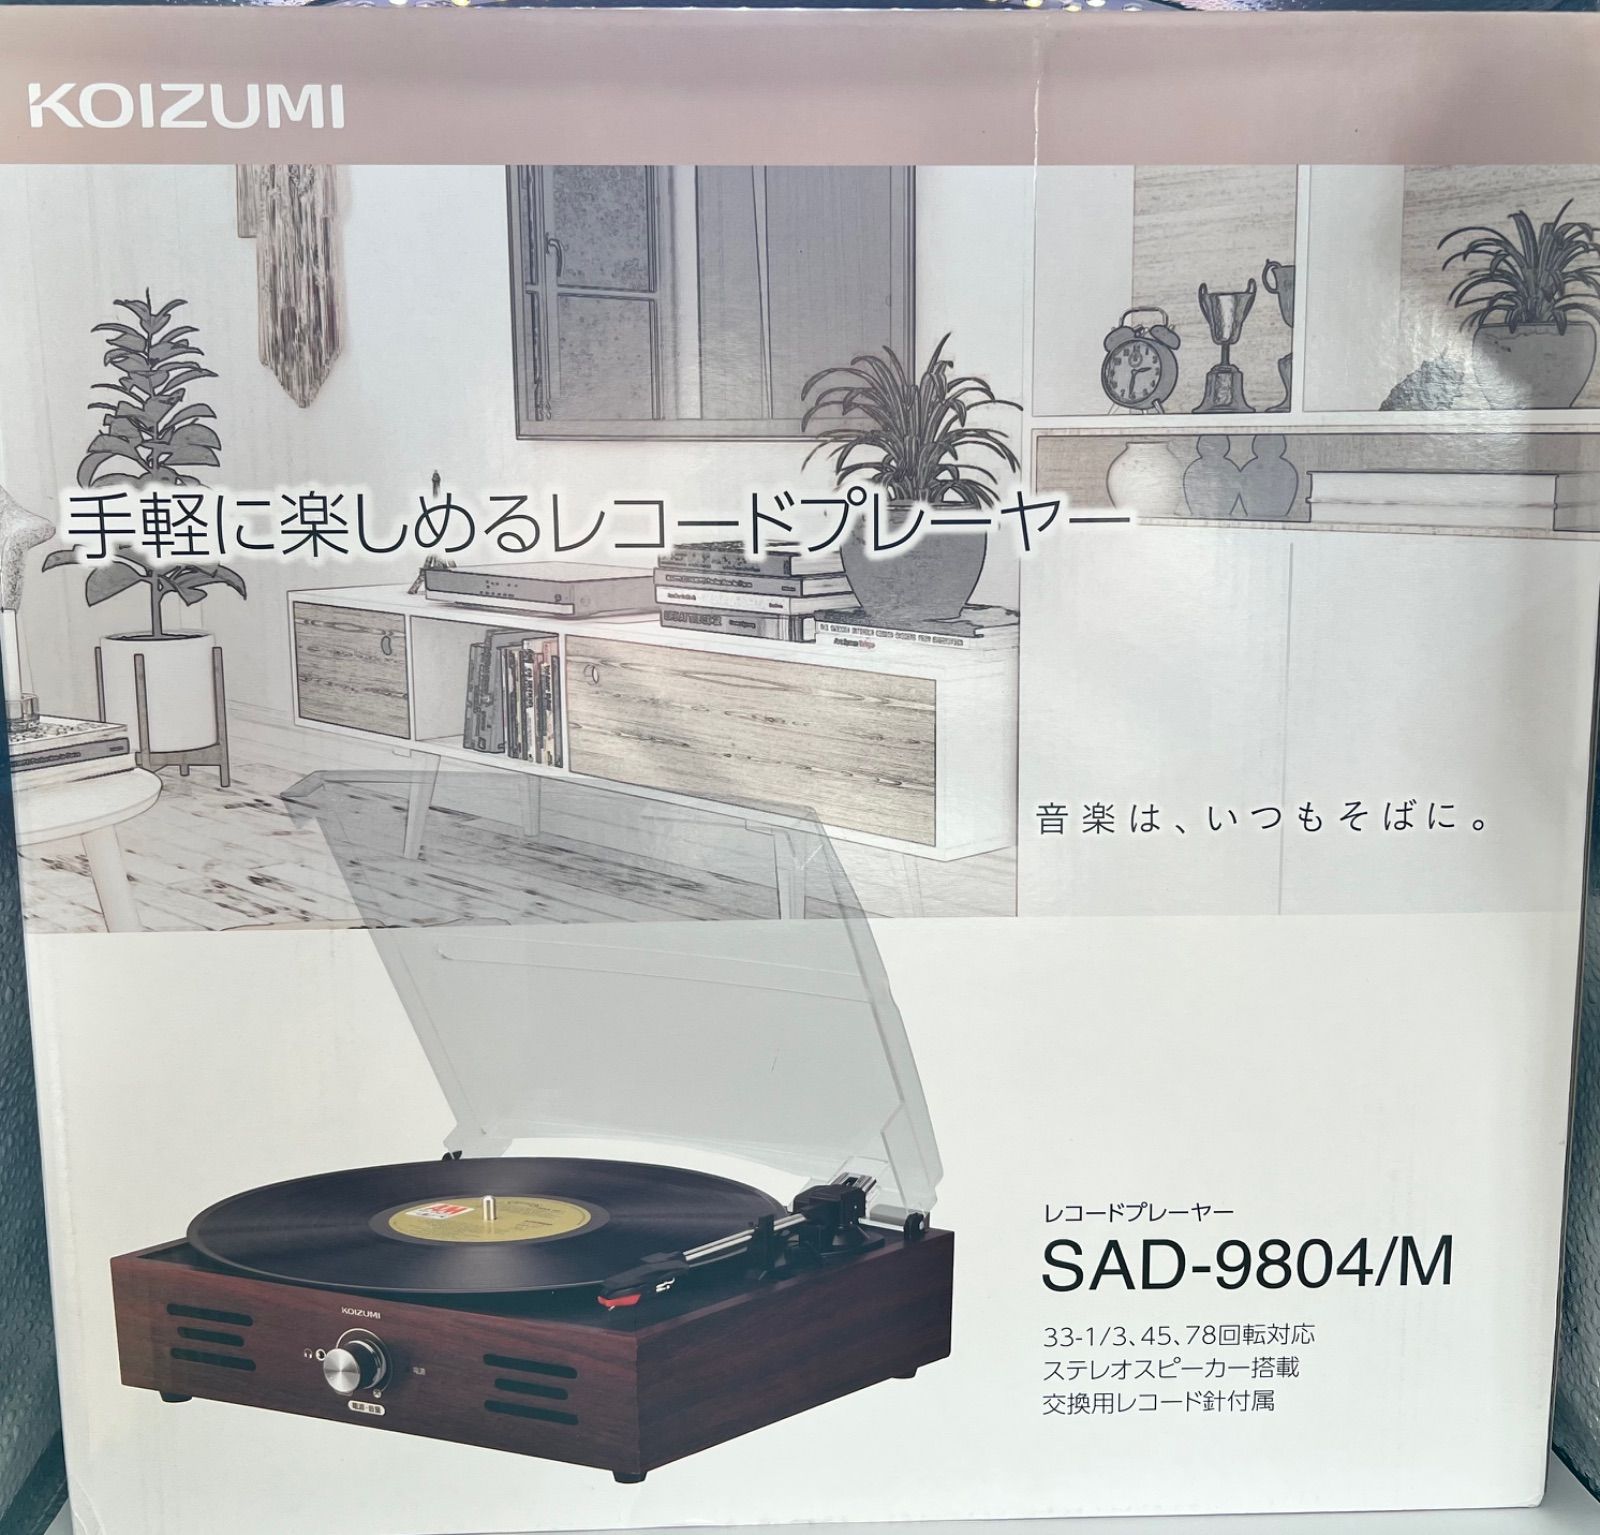 手軽に楽しめるレコードプレーヤー KOIZUMI SAD-9804/M - Round Earth